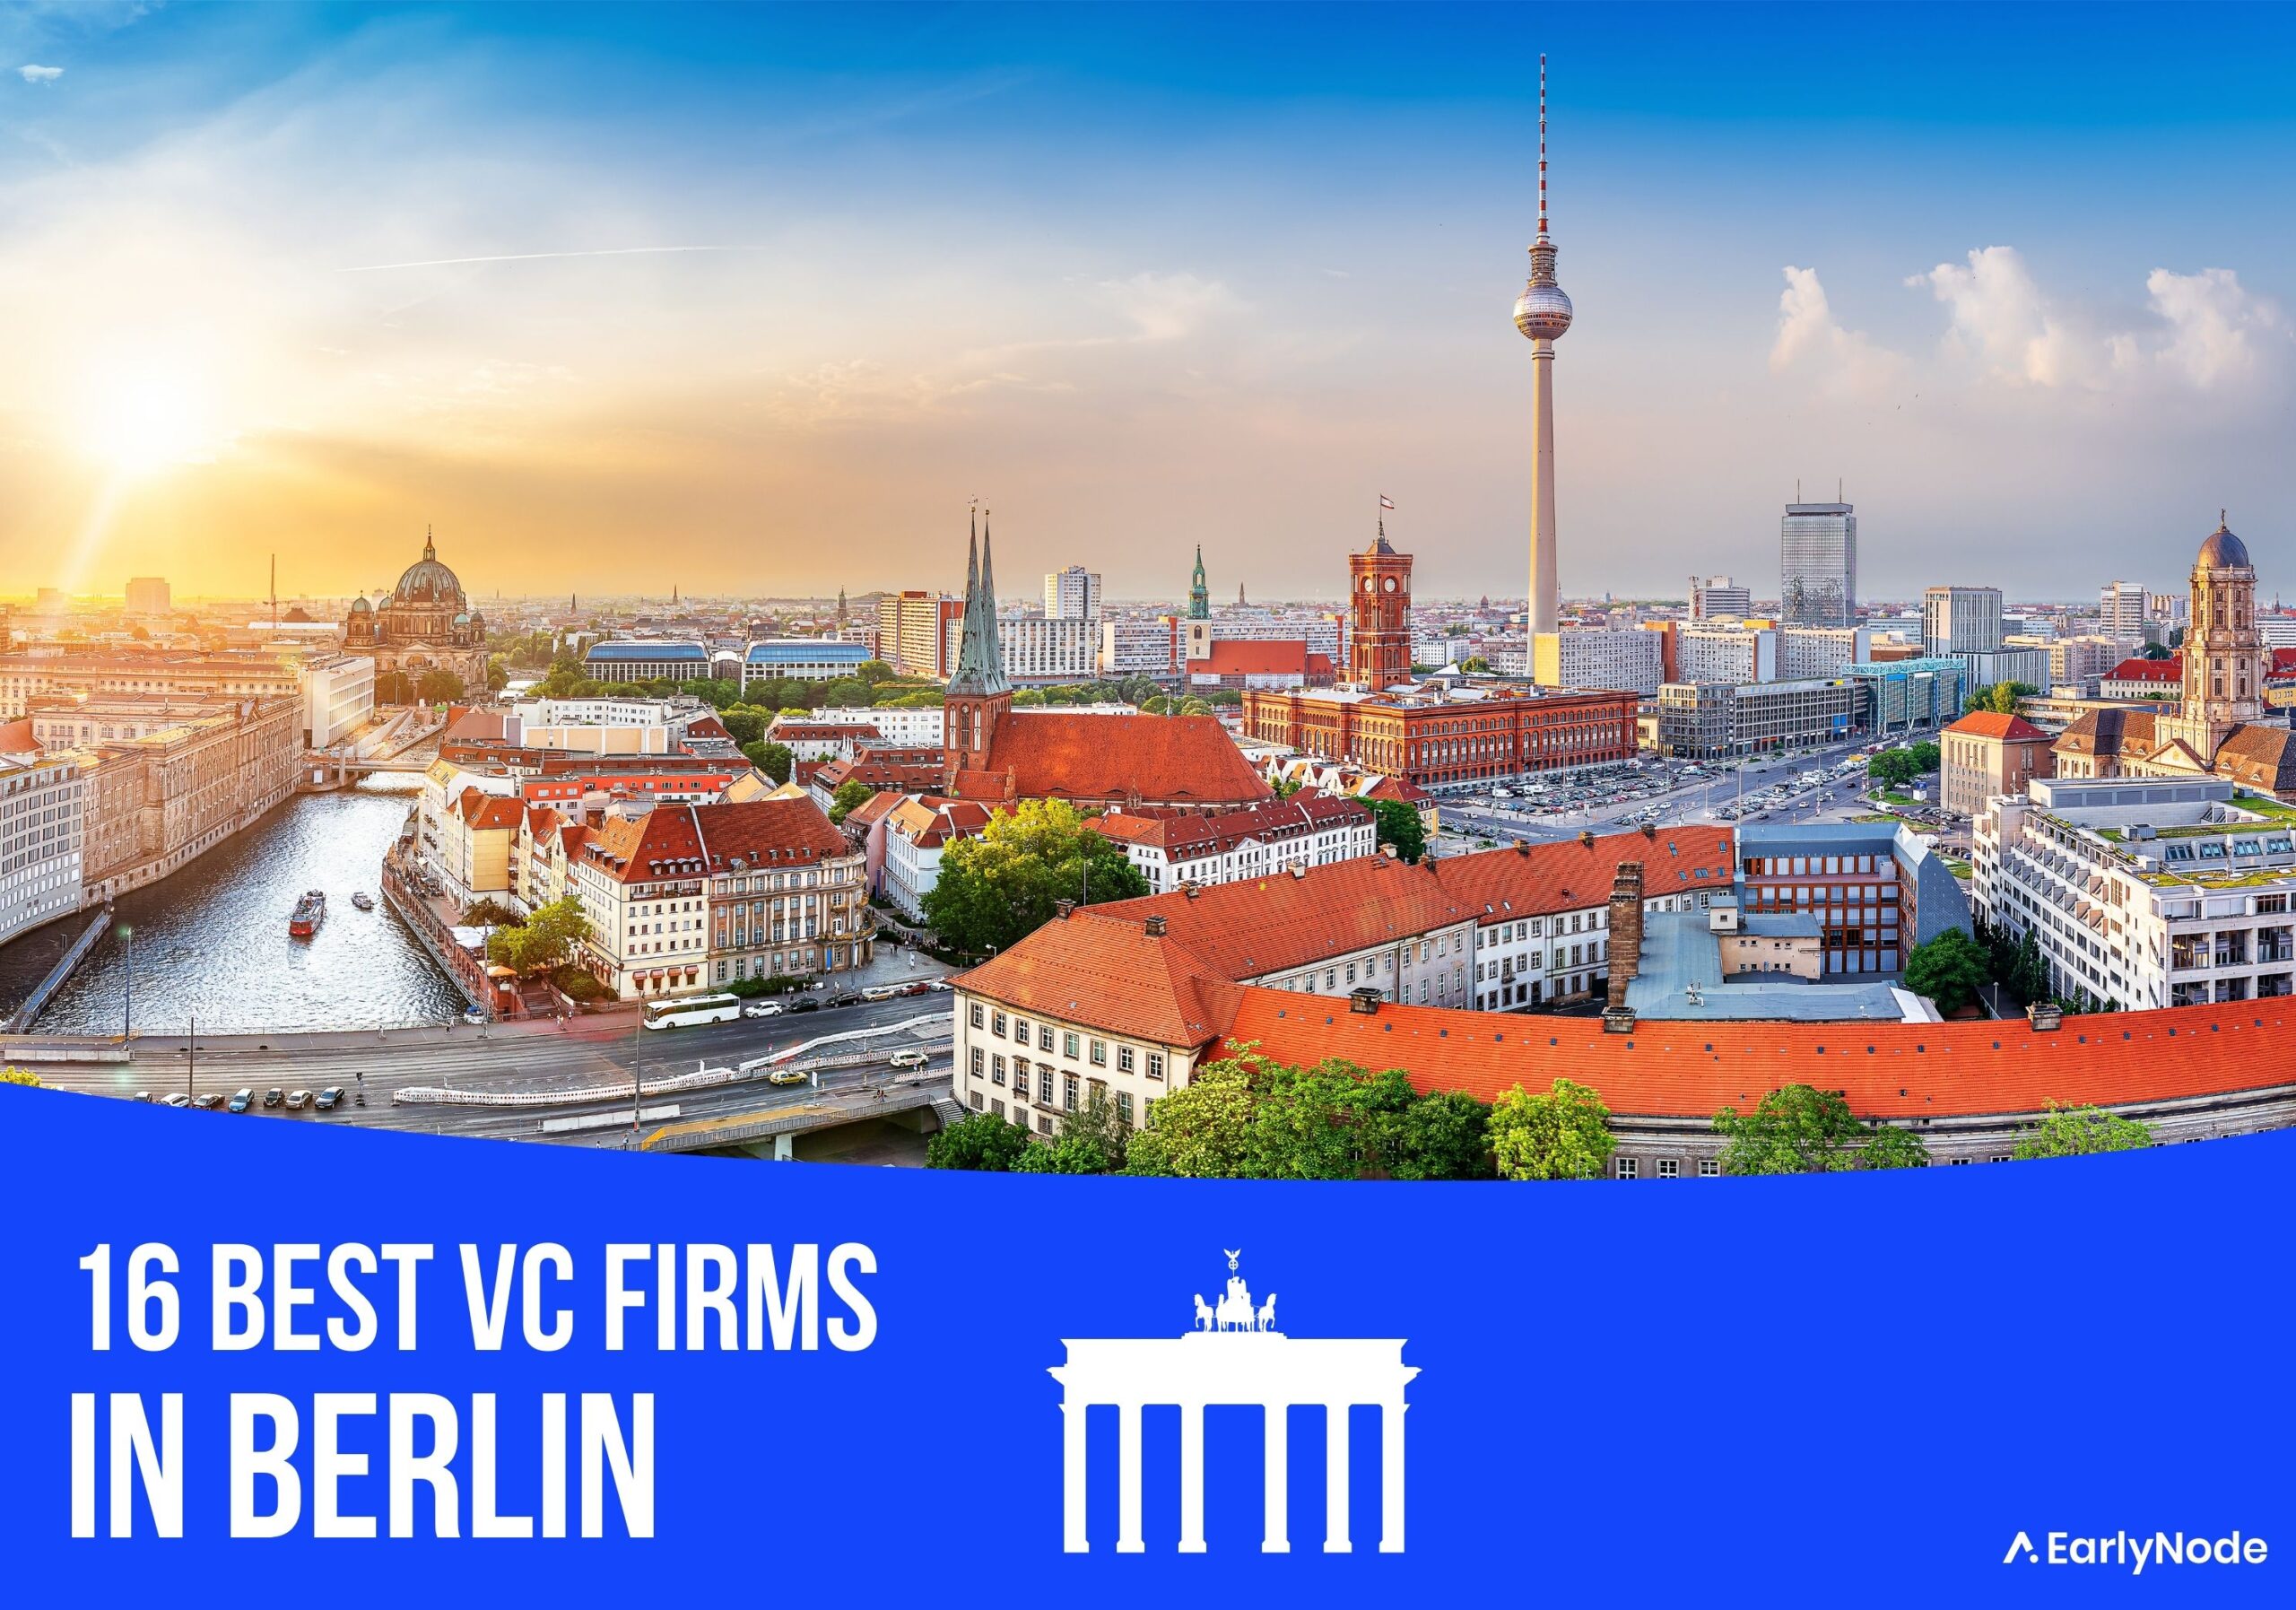 16 Best Venture Capital (VC) Firms in Berlin